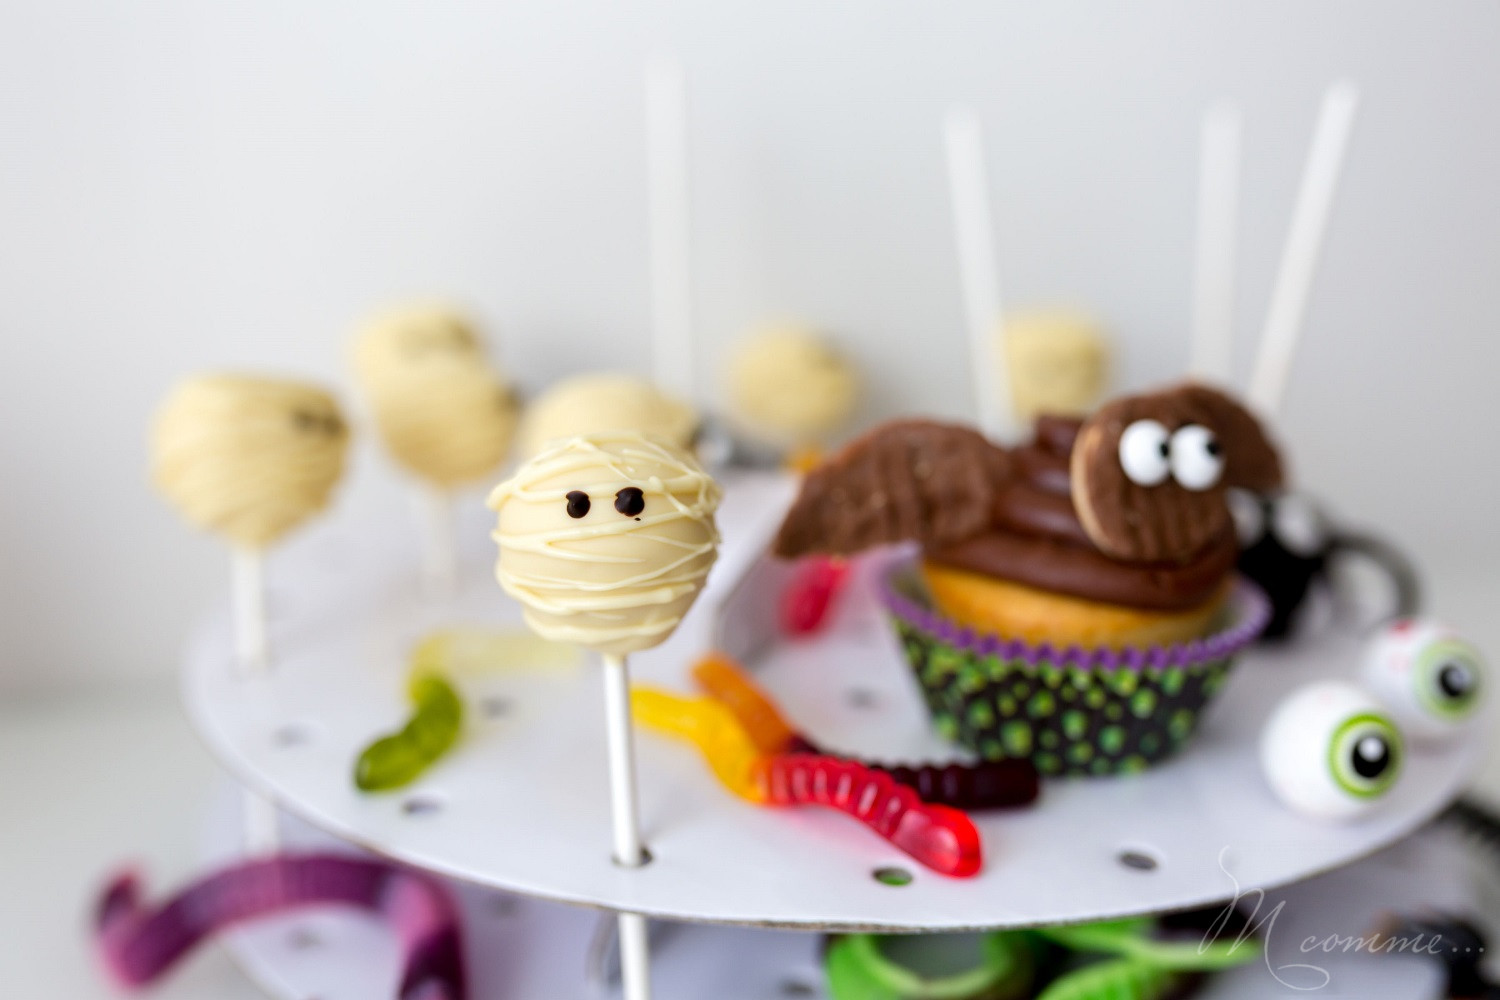 Envie d’un dessert sympa pour le soir d’Halloween ? Voici une recette facile à faire avec vos enfants avec 3 fois rien : des pop cakes momies. #popcakes #cakepops #gateau #gateauhalloween #momie #popcakemomie #cakepopmomie #halloween #gourmandises #enfants #kids #sucette #gateausucette